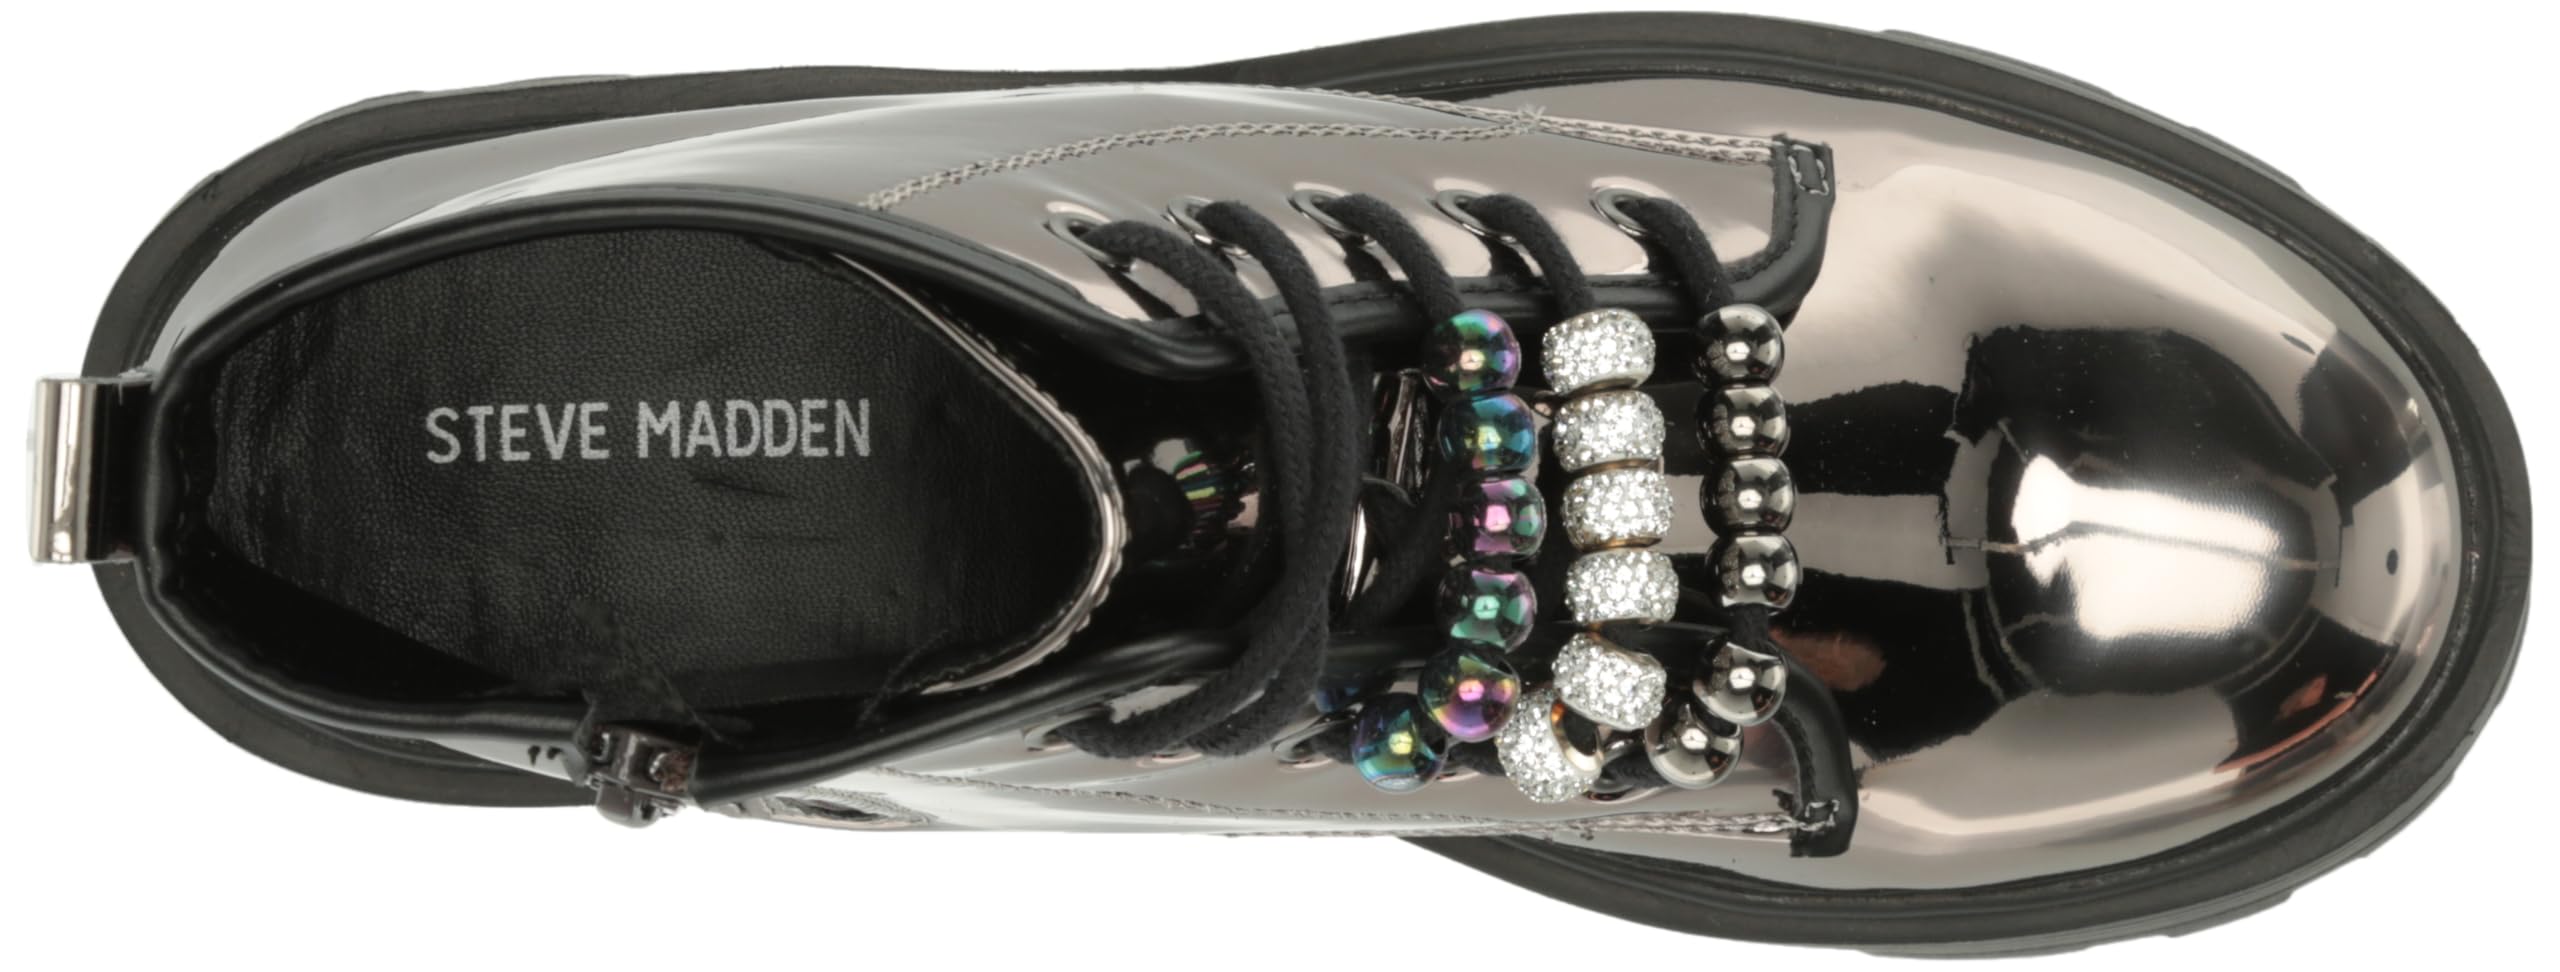 Steve Madden Girls Shoes Mirra Combat Boot